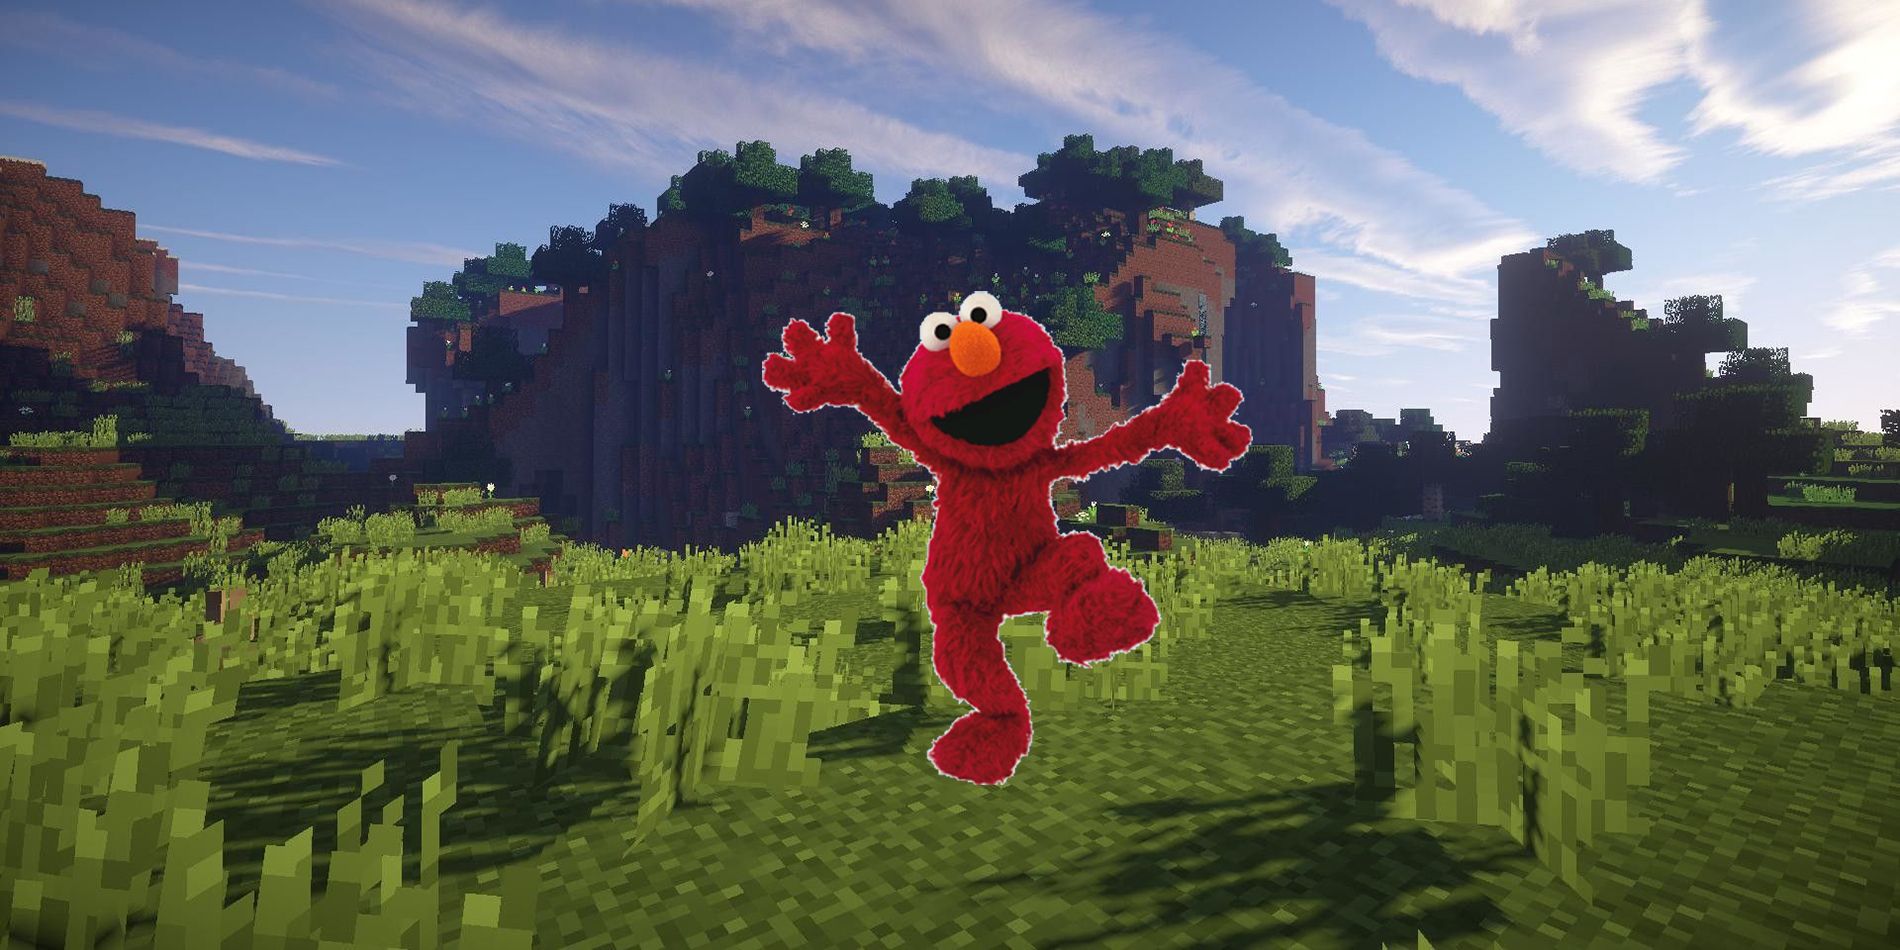 La construcción aterradora de Elmo del jugador de Minecraft es aterradora para mí